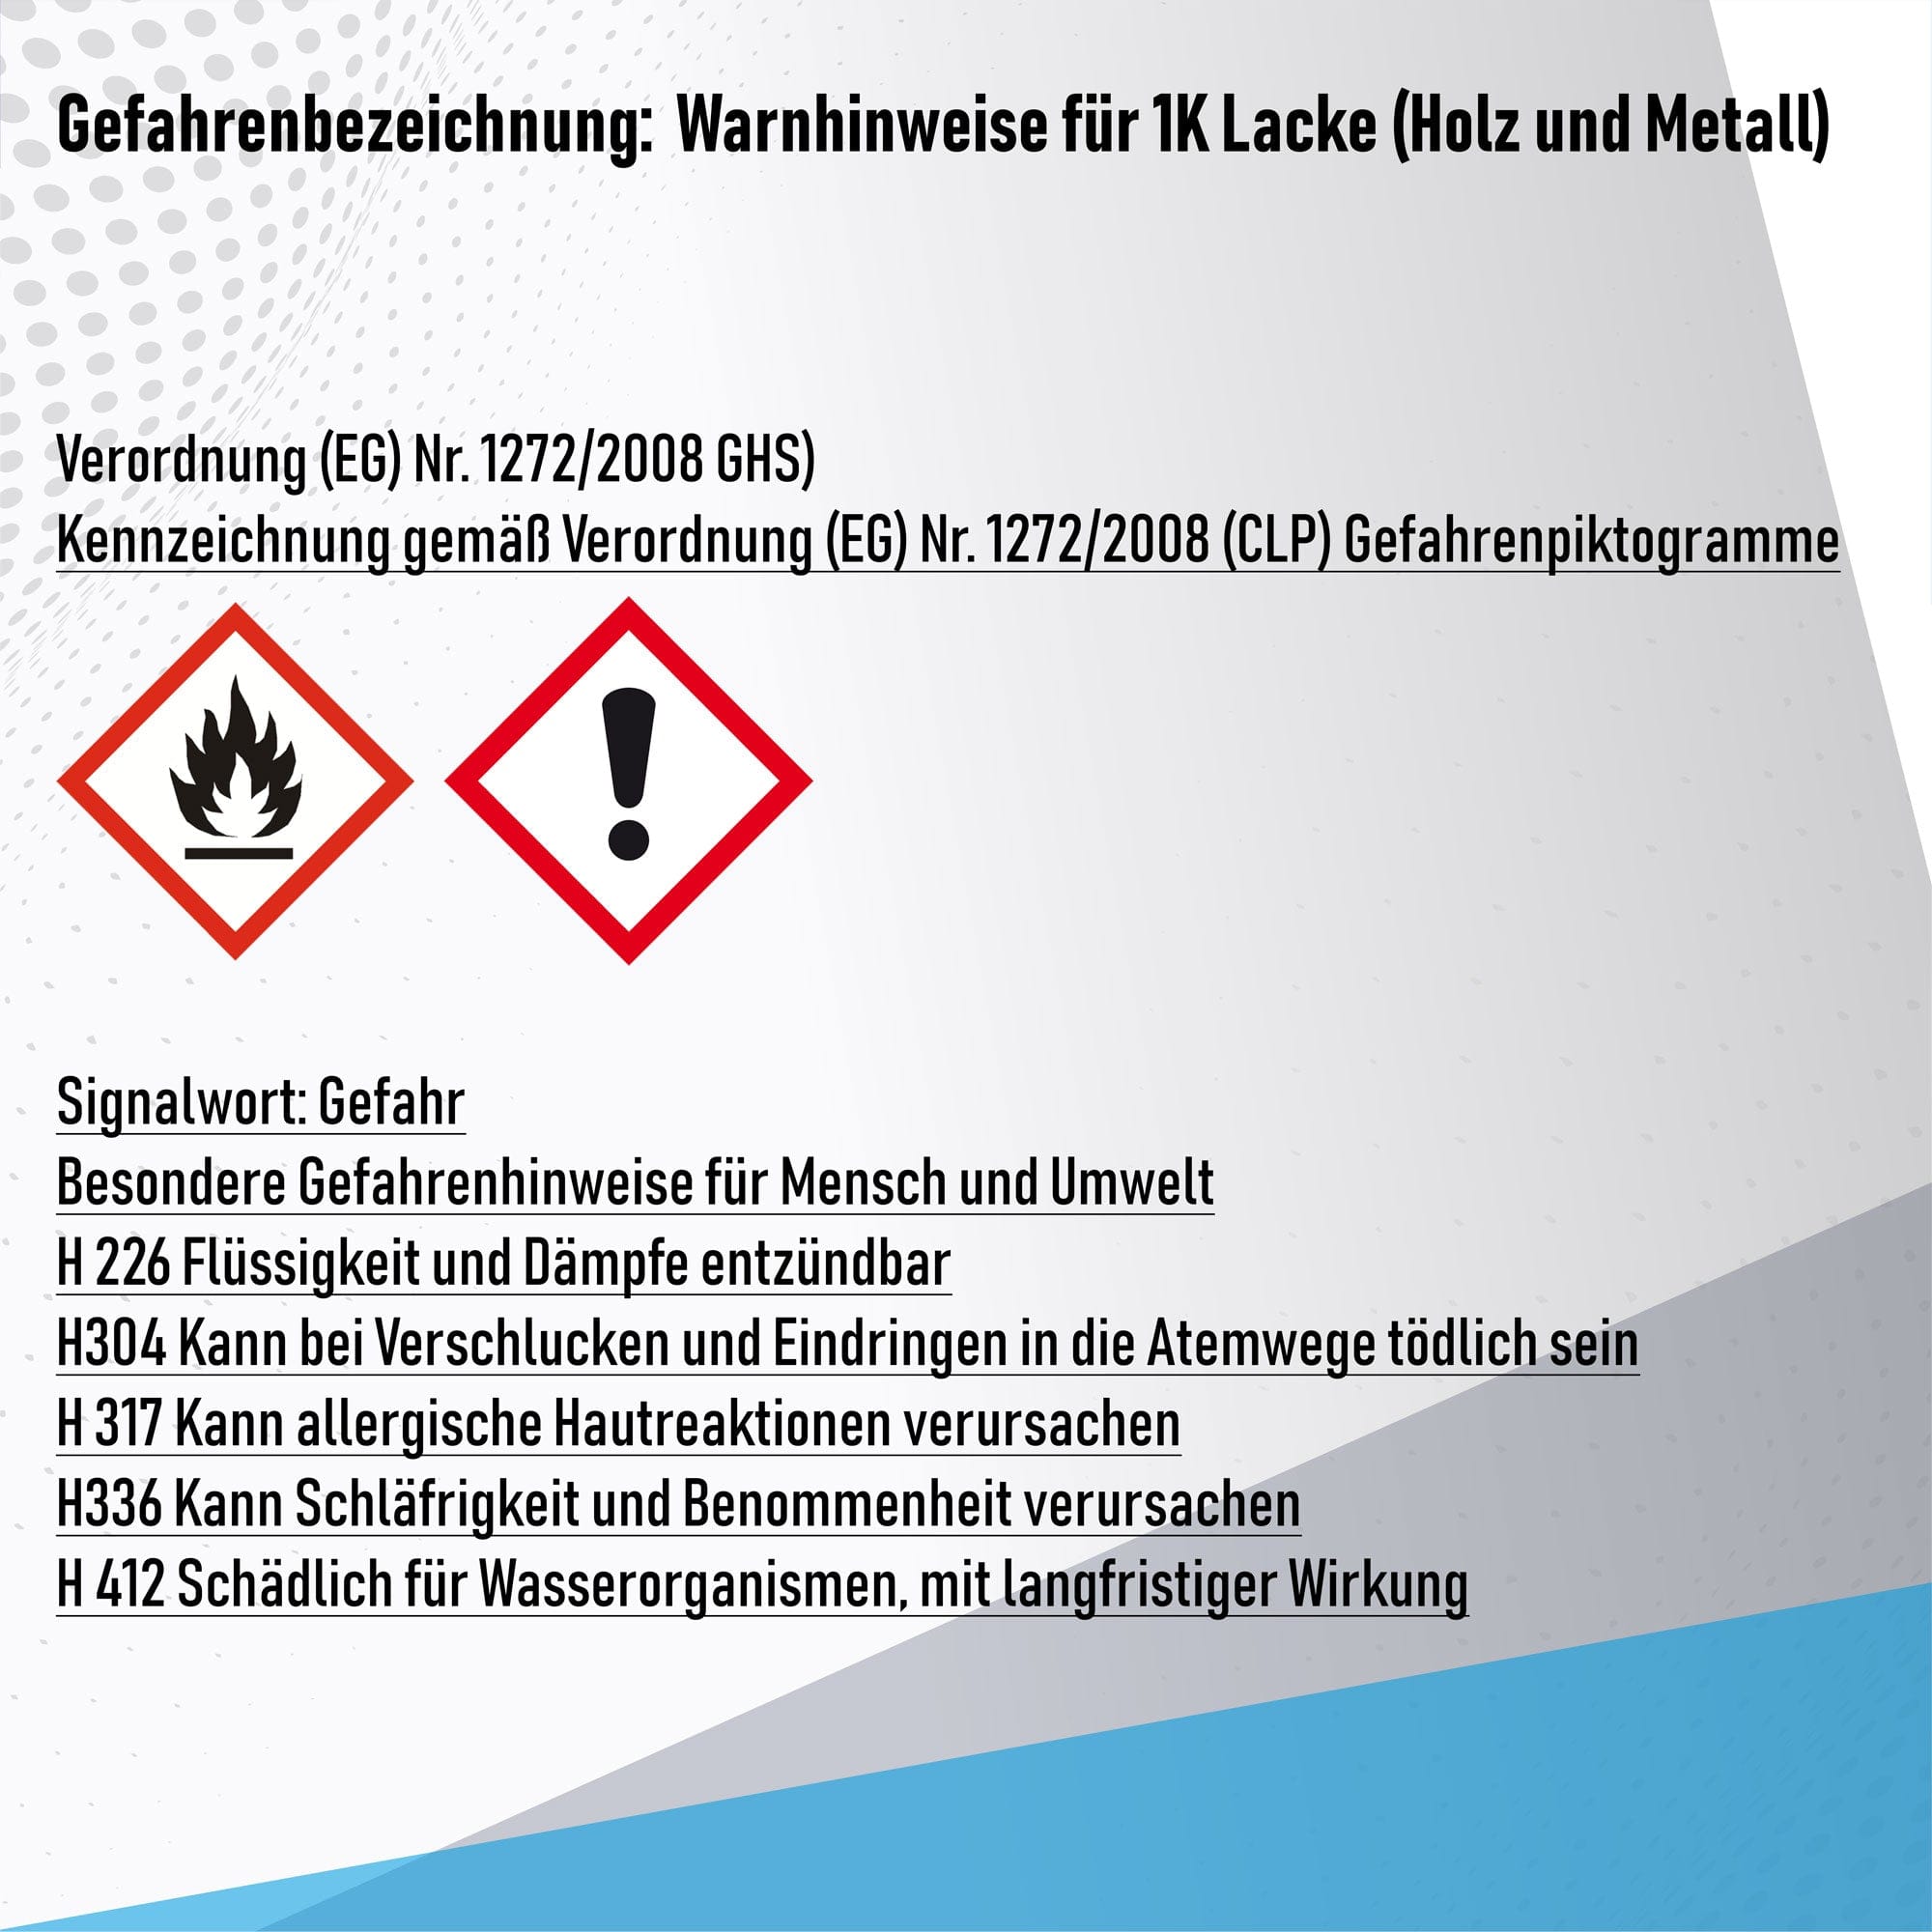 Halvar Lacke & Beschichtungen Halvar Holzschutzfarbe - Wetterschutzfarbe & Langzeitschutz